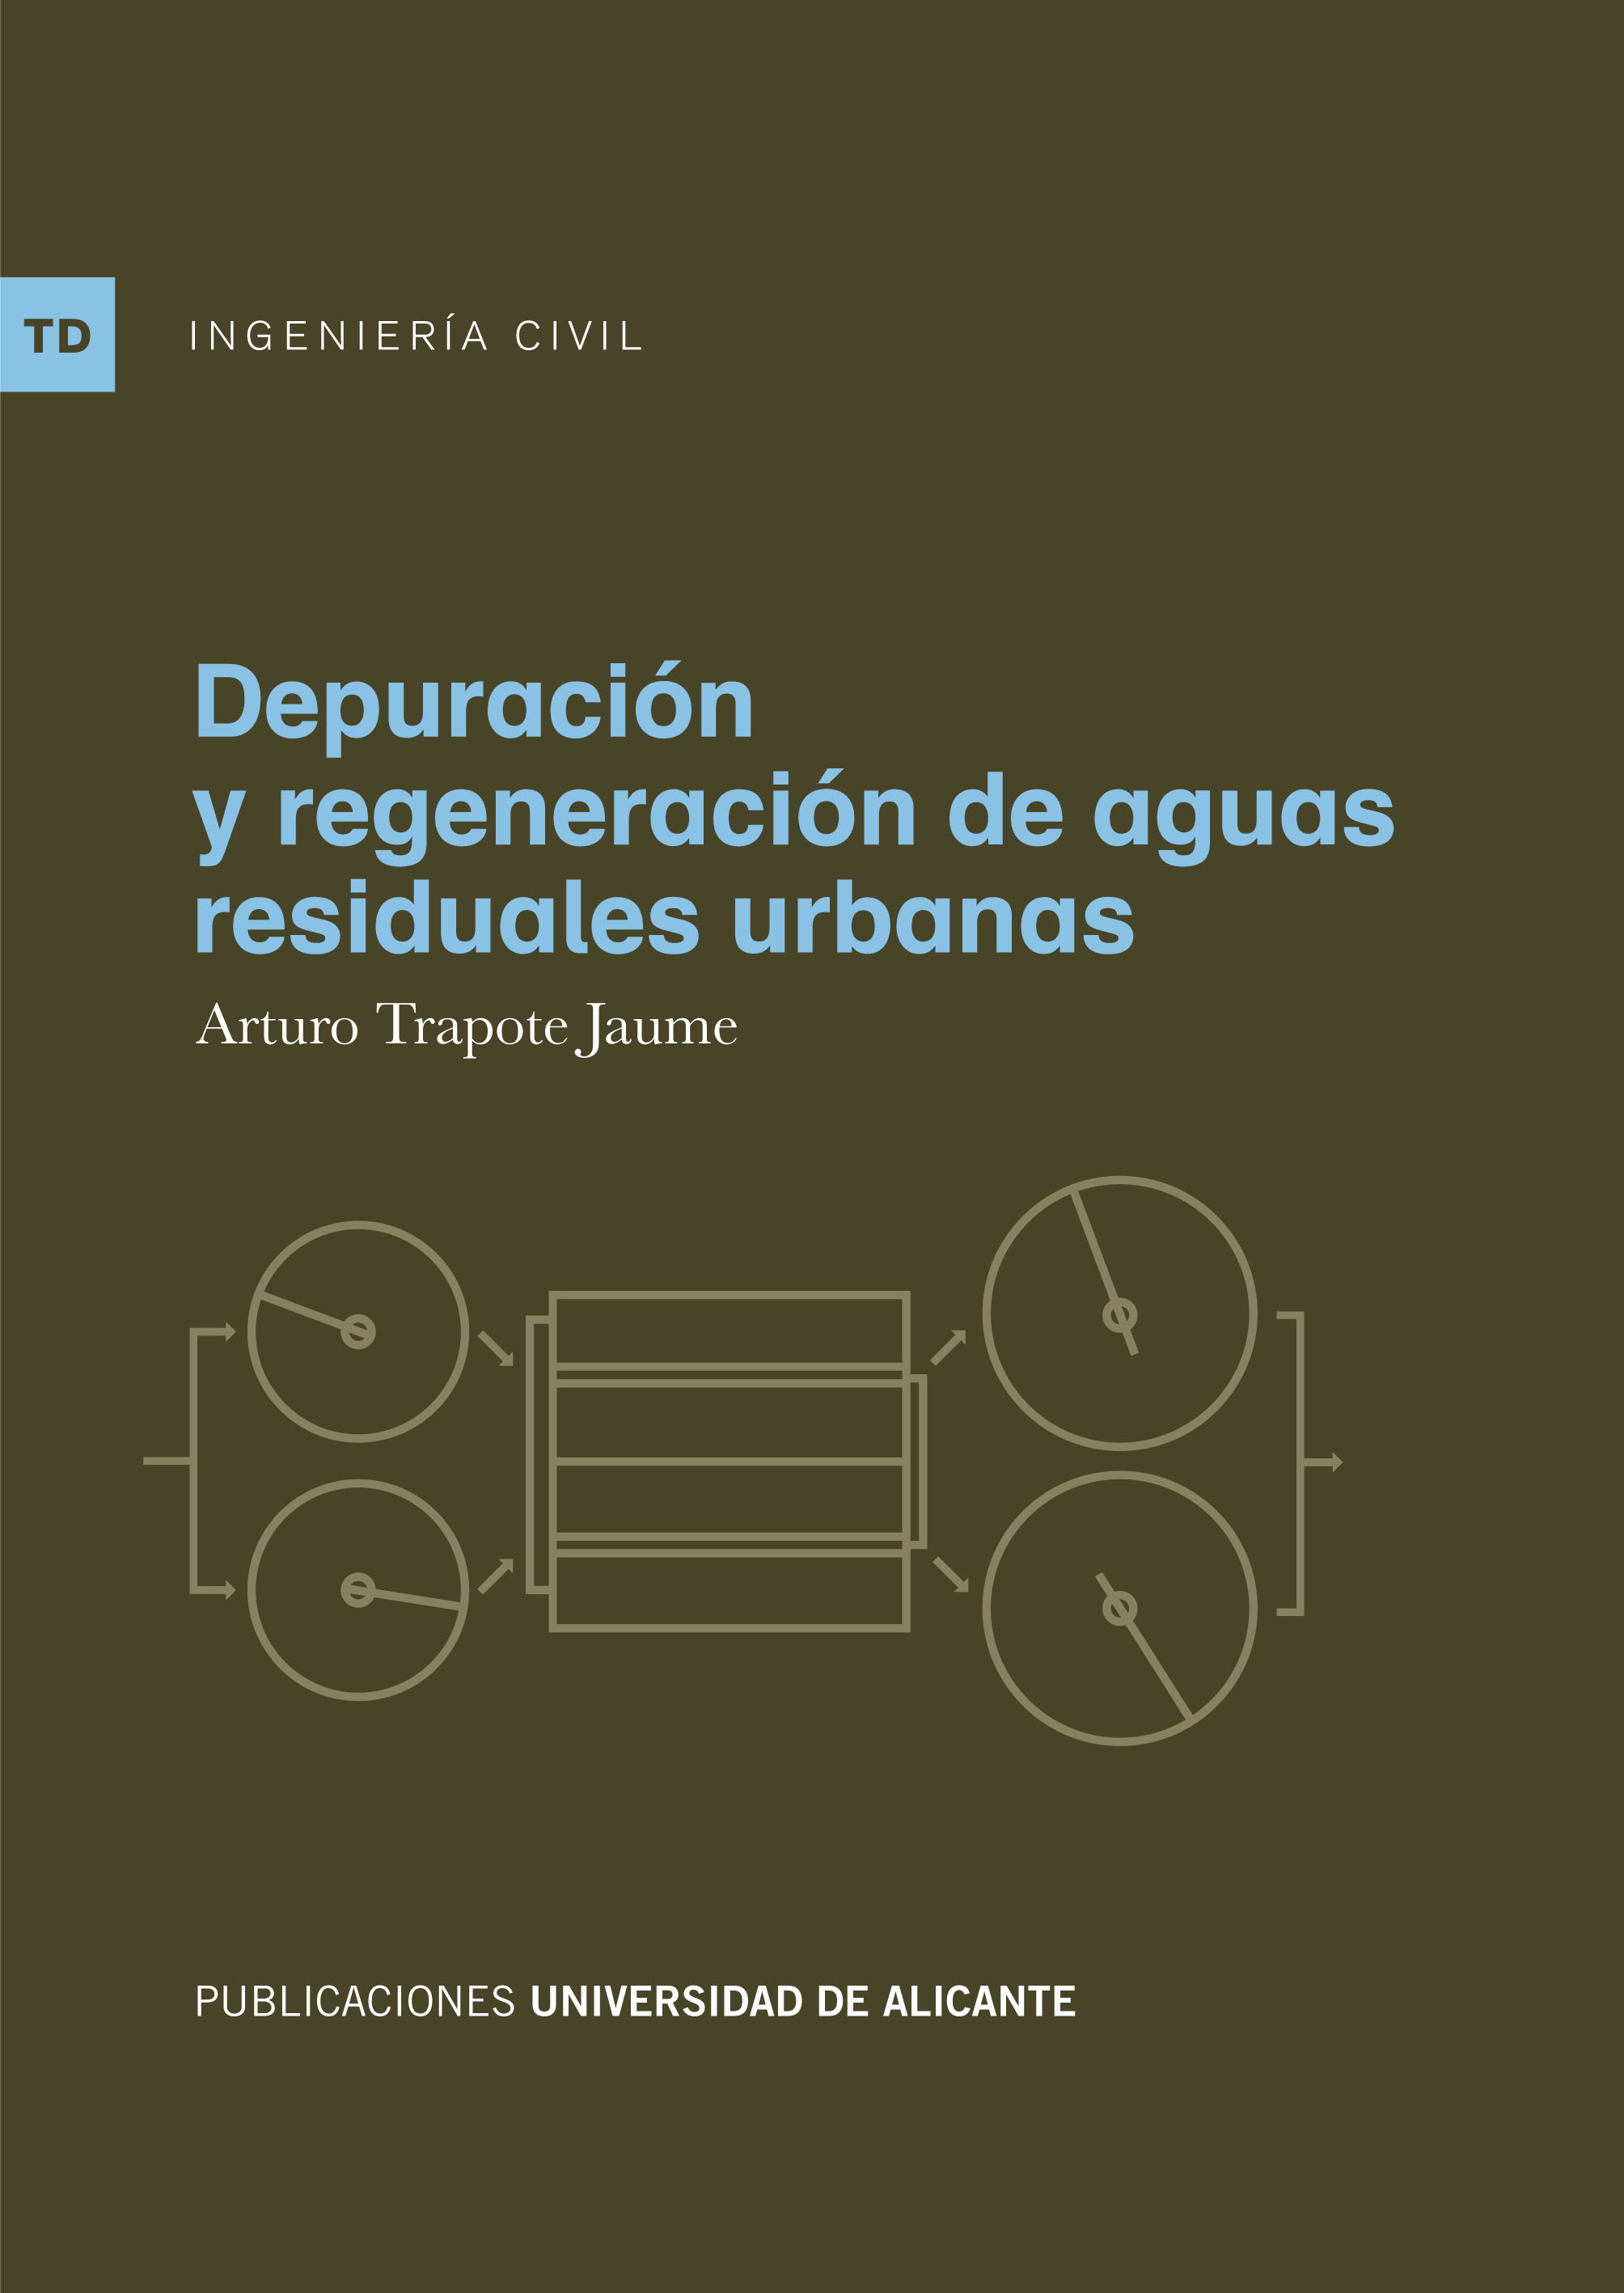 DepuraciÃ³n y regeneraciÃ³n de aguas residuales urbanas